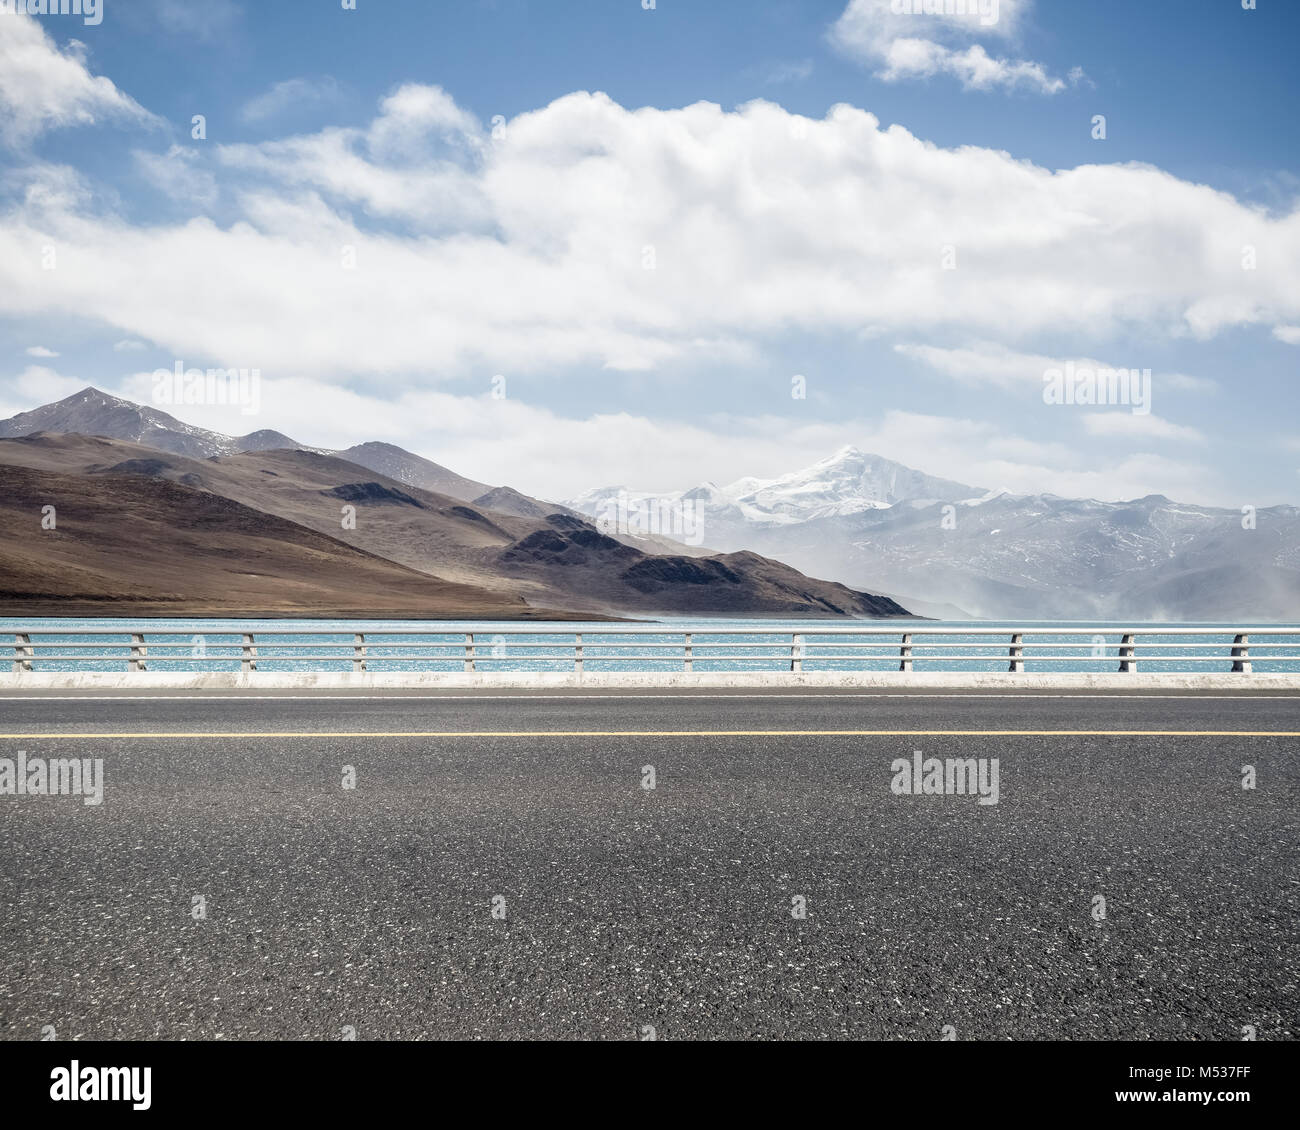 Route avec lac sacré au Tibet Banque D'Images